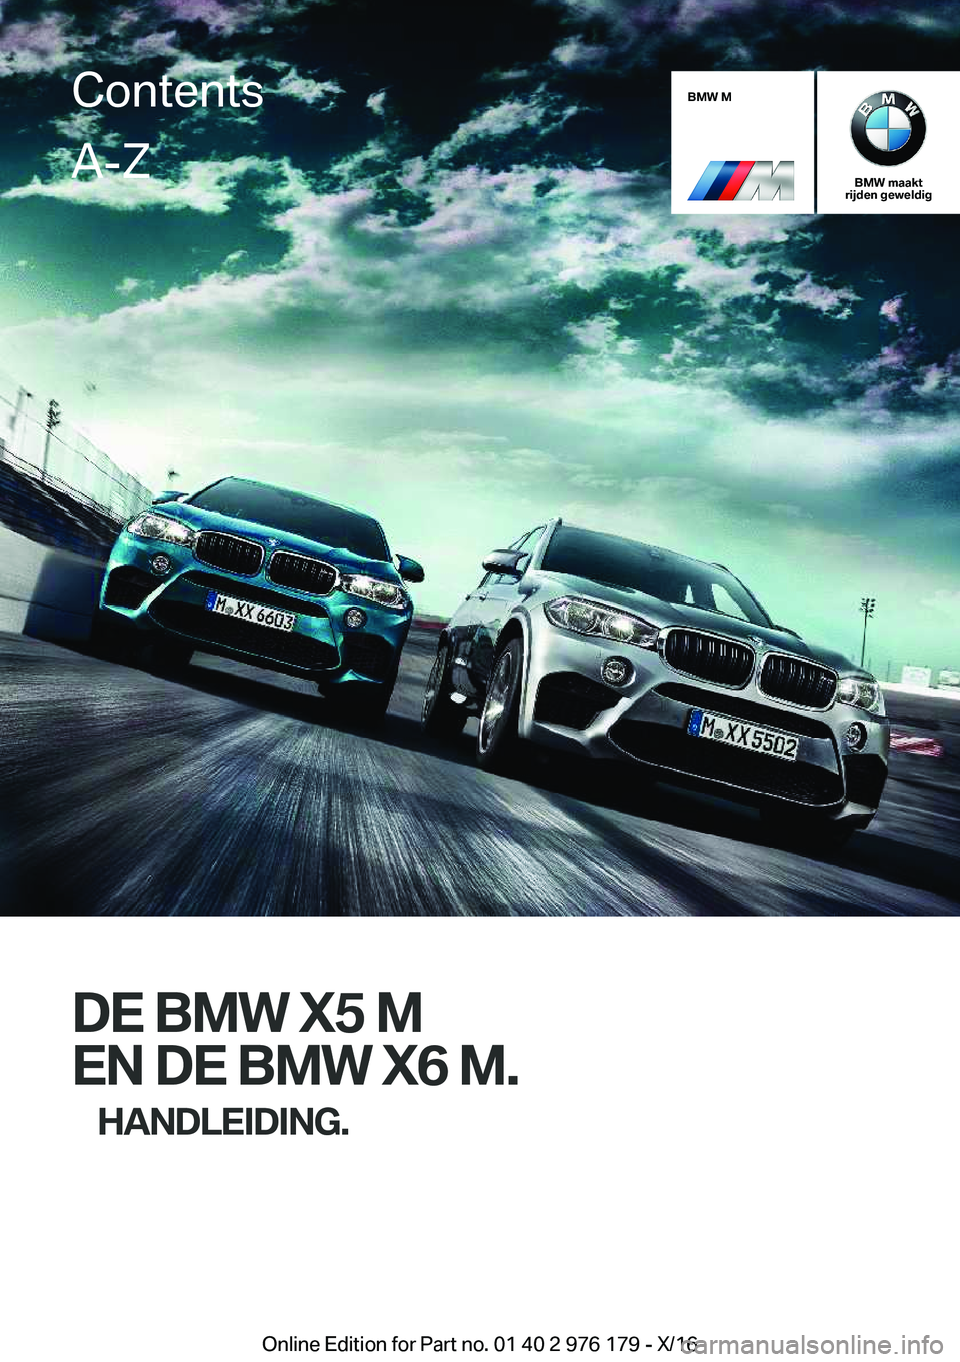 BMW X5 M 2017  Instructieboekjes (in Dutch) �B�M�W��M
�B�M�W��m�a�a�k�t
�r�i�j�d�e�n��g�e�w�e�l�d�i�g
�D�E��B�M�W��X�5��M
�E�N��D�E��B�M�W��X�6��M�. �H�A�N�D�L�E�I�D�I�N�G�.
�C�o�n�t�e�n�t�s�A�-�Z
�O�n�l�i�n�e� �E�d�i�t�i�o�n� �f�o�r�